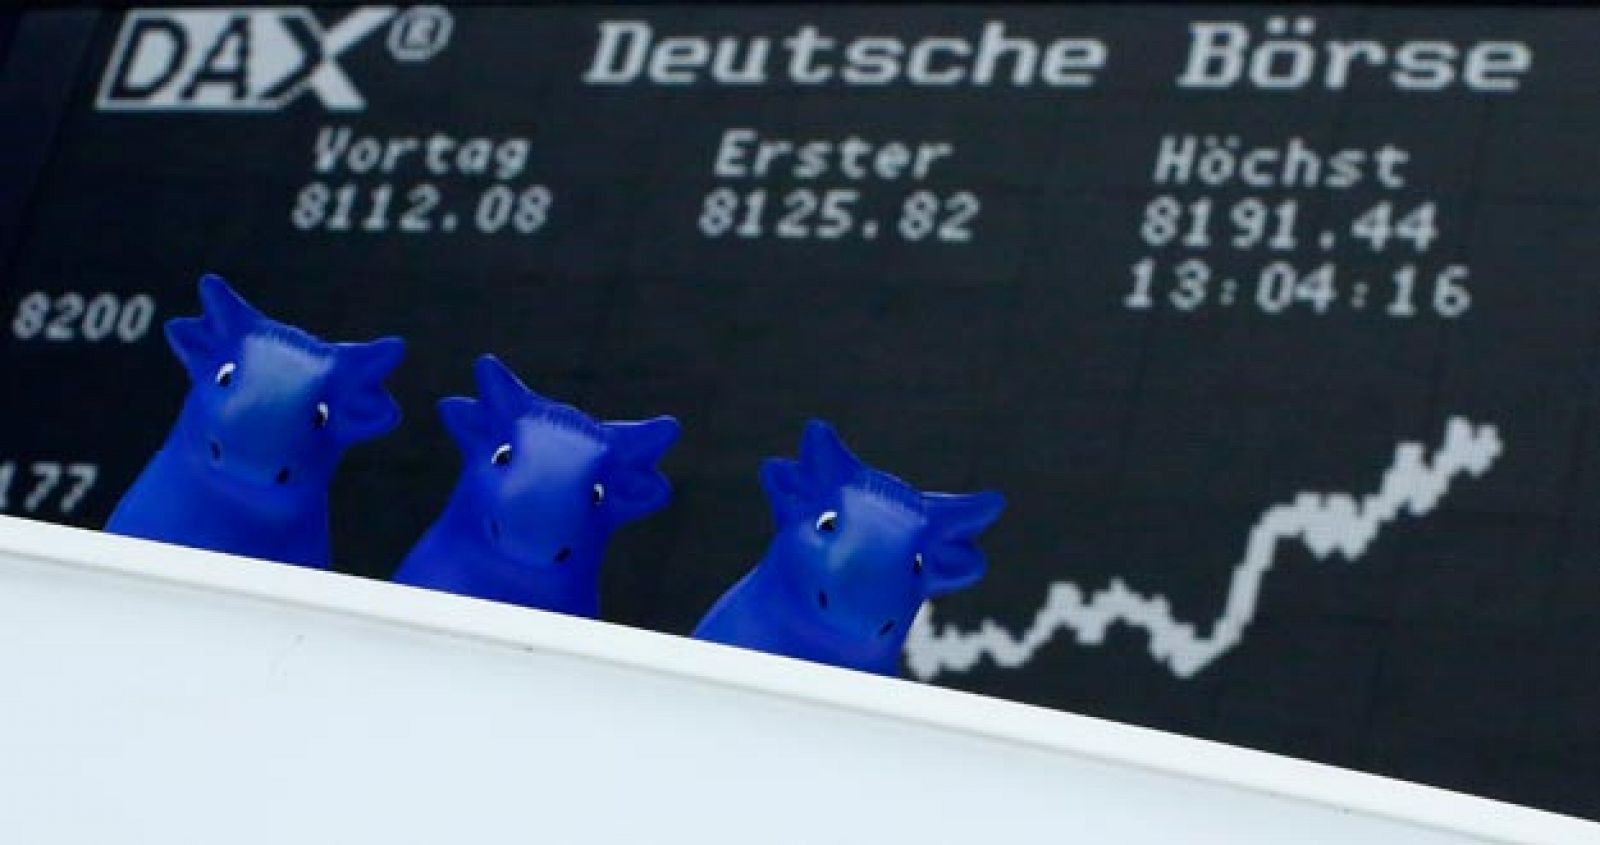 Imagen de una pantalla de la Bolsa alemana